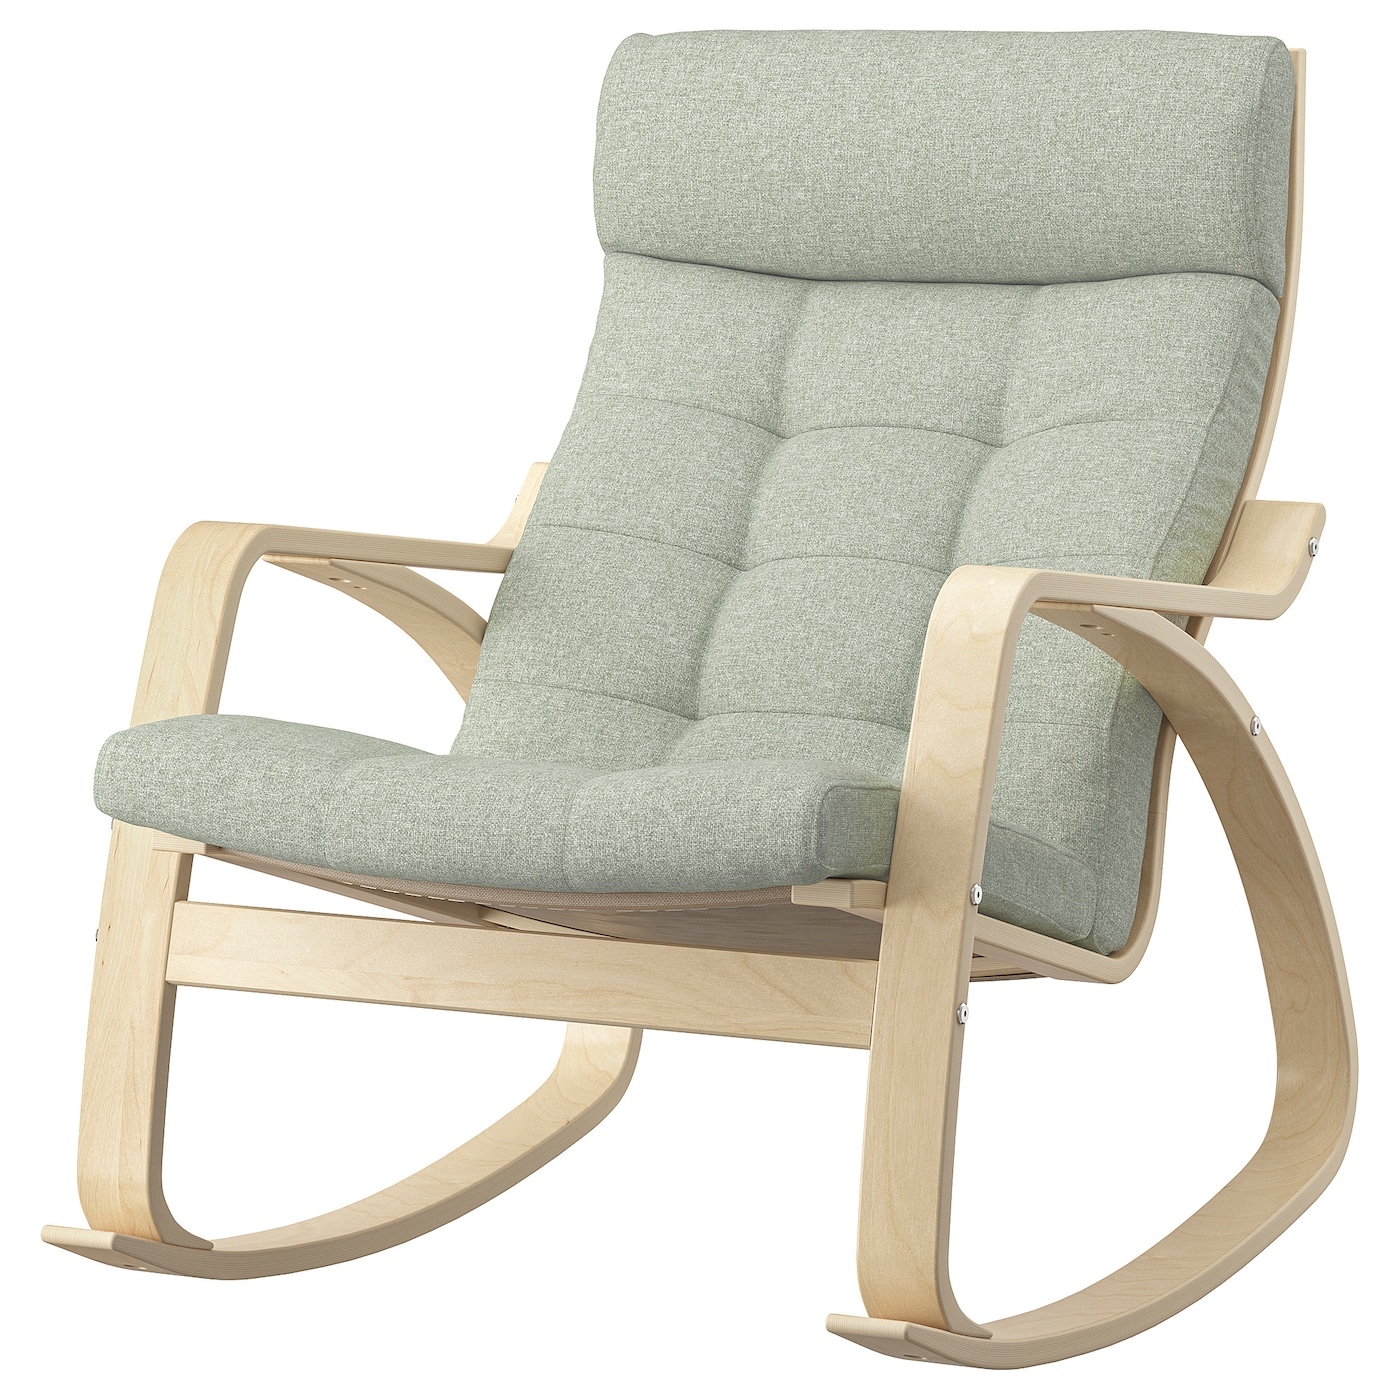 детское кресло качалка lazychild удобное кресло качалка с шейкером для сна детская кроватка качалка с колесами ПОЭНГ Кресло-качалка, березовый шпон/Гуннаред светло-зеленый POÄNG IKEA